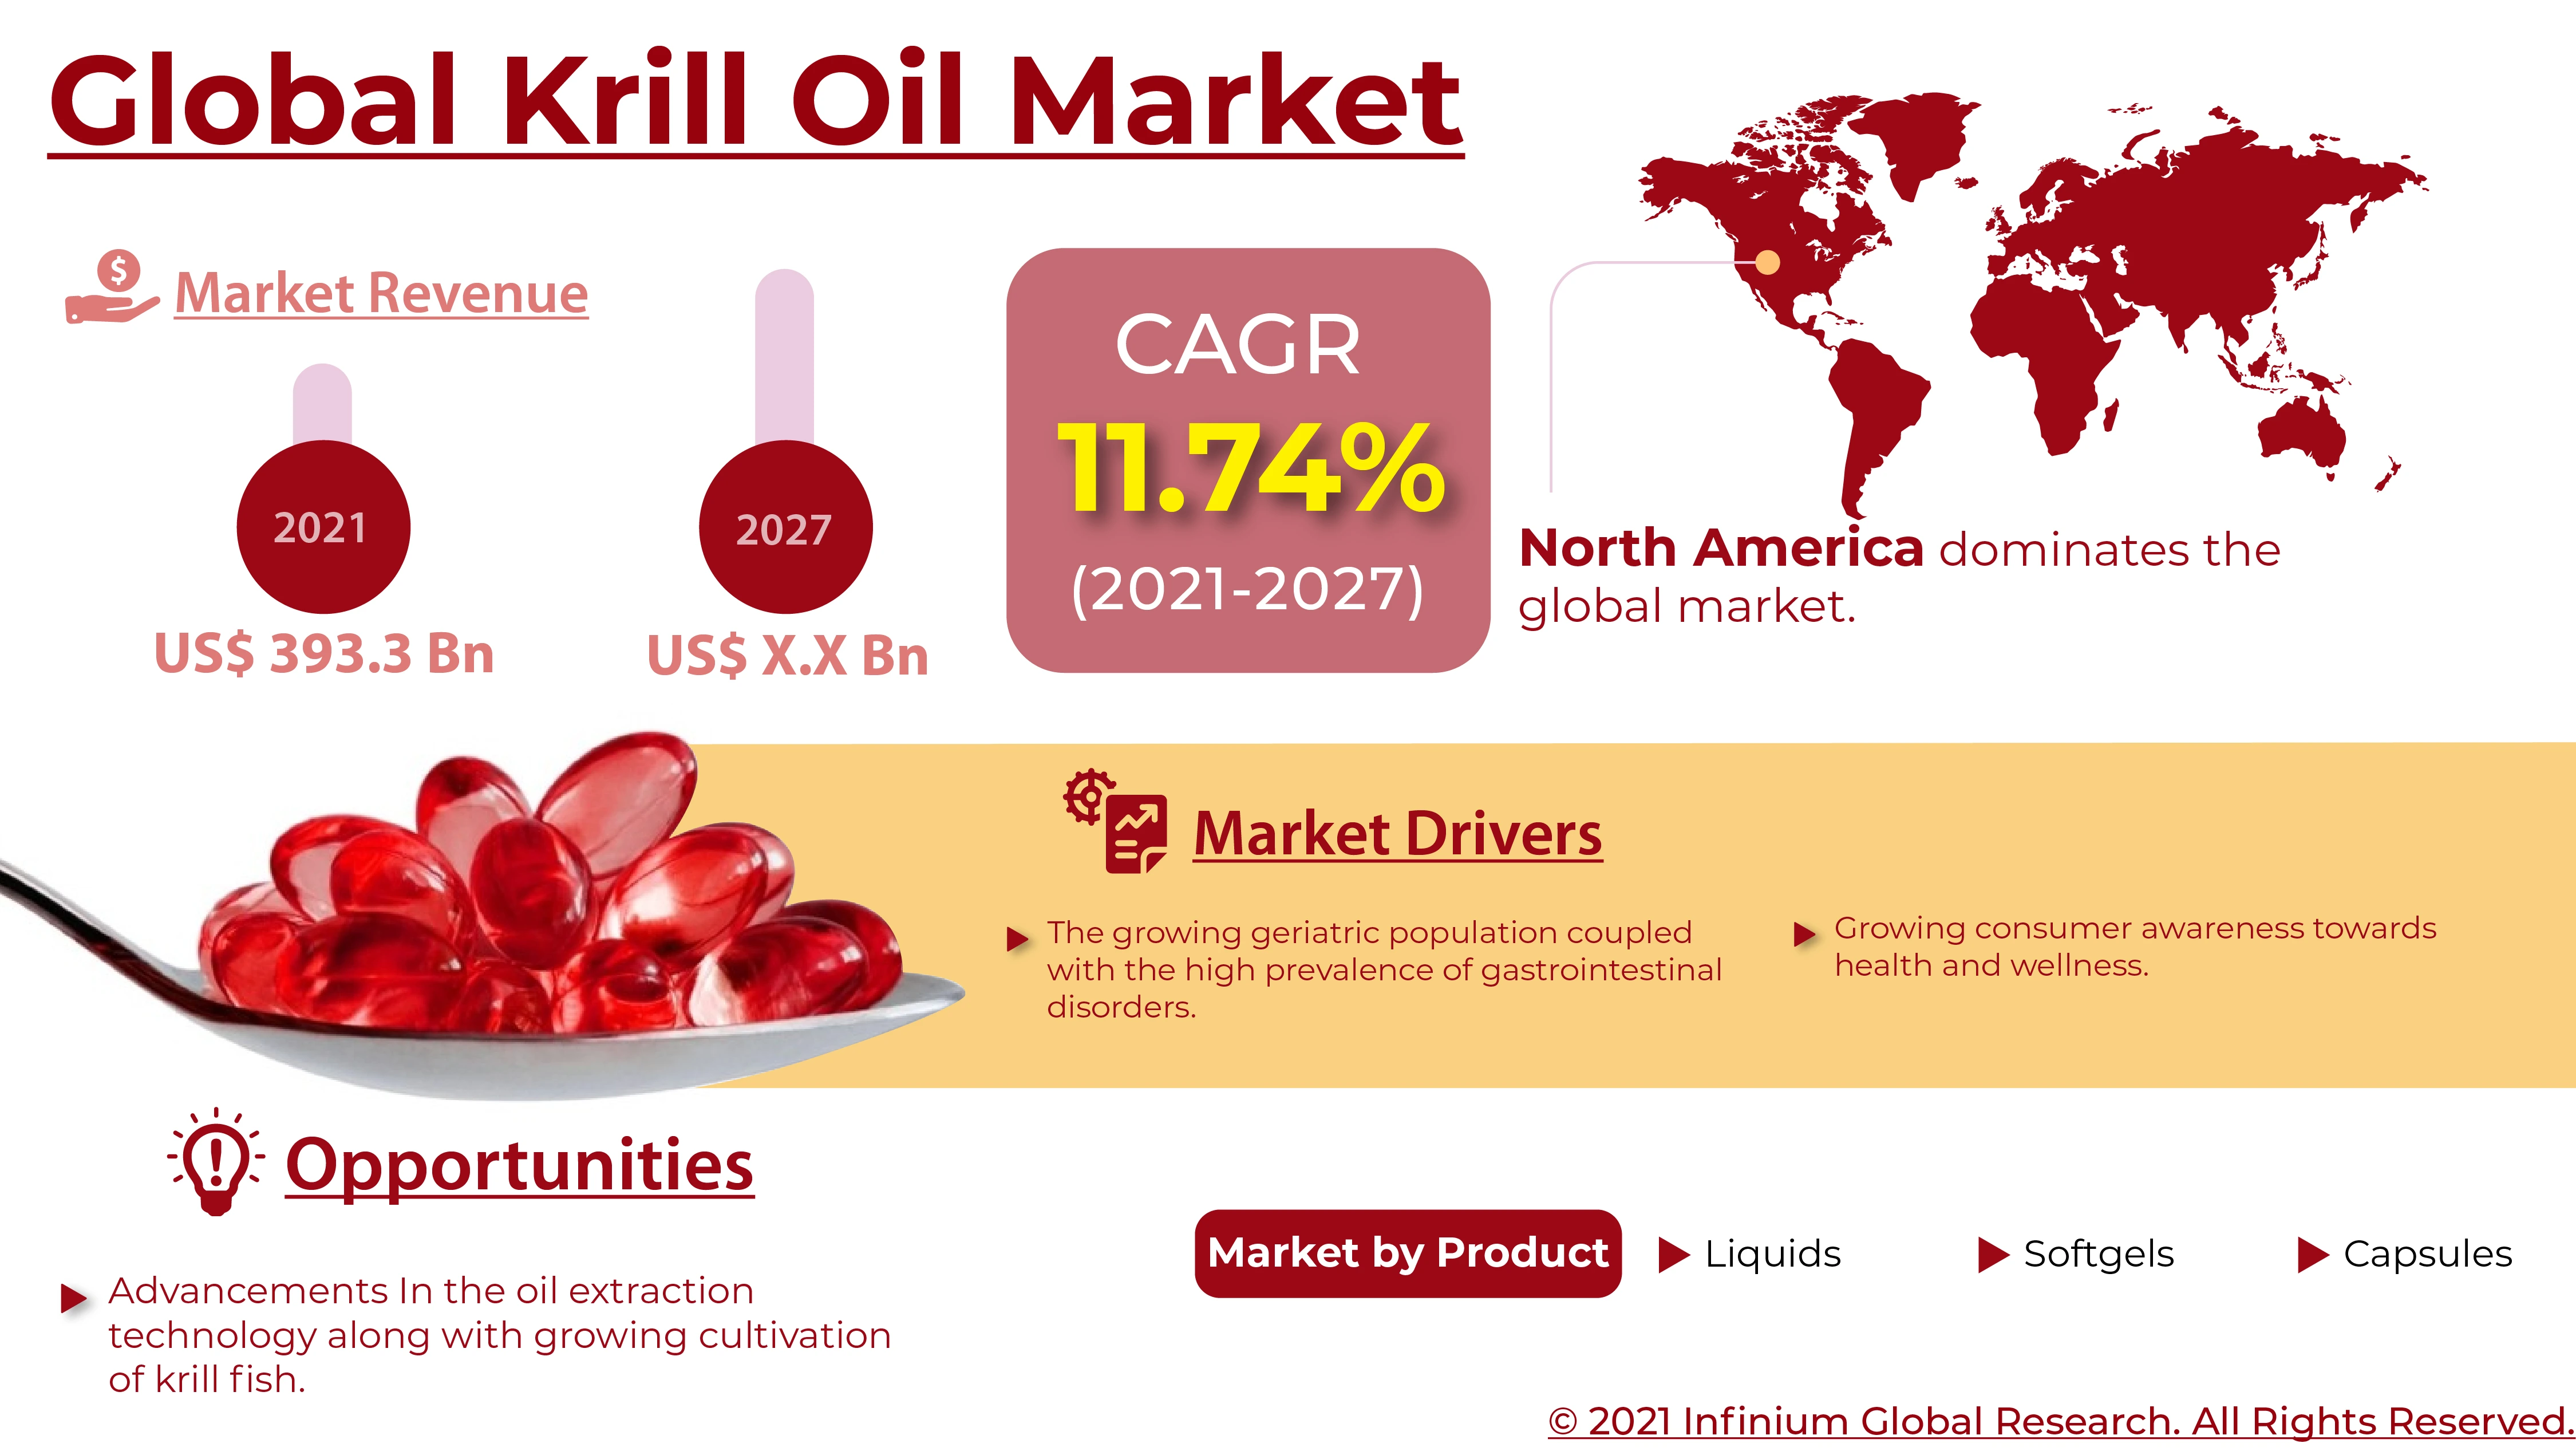 Krill Oil Market